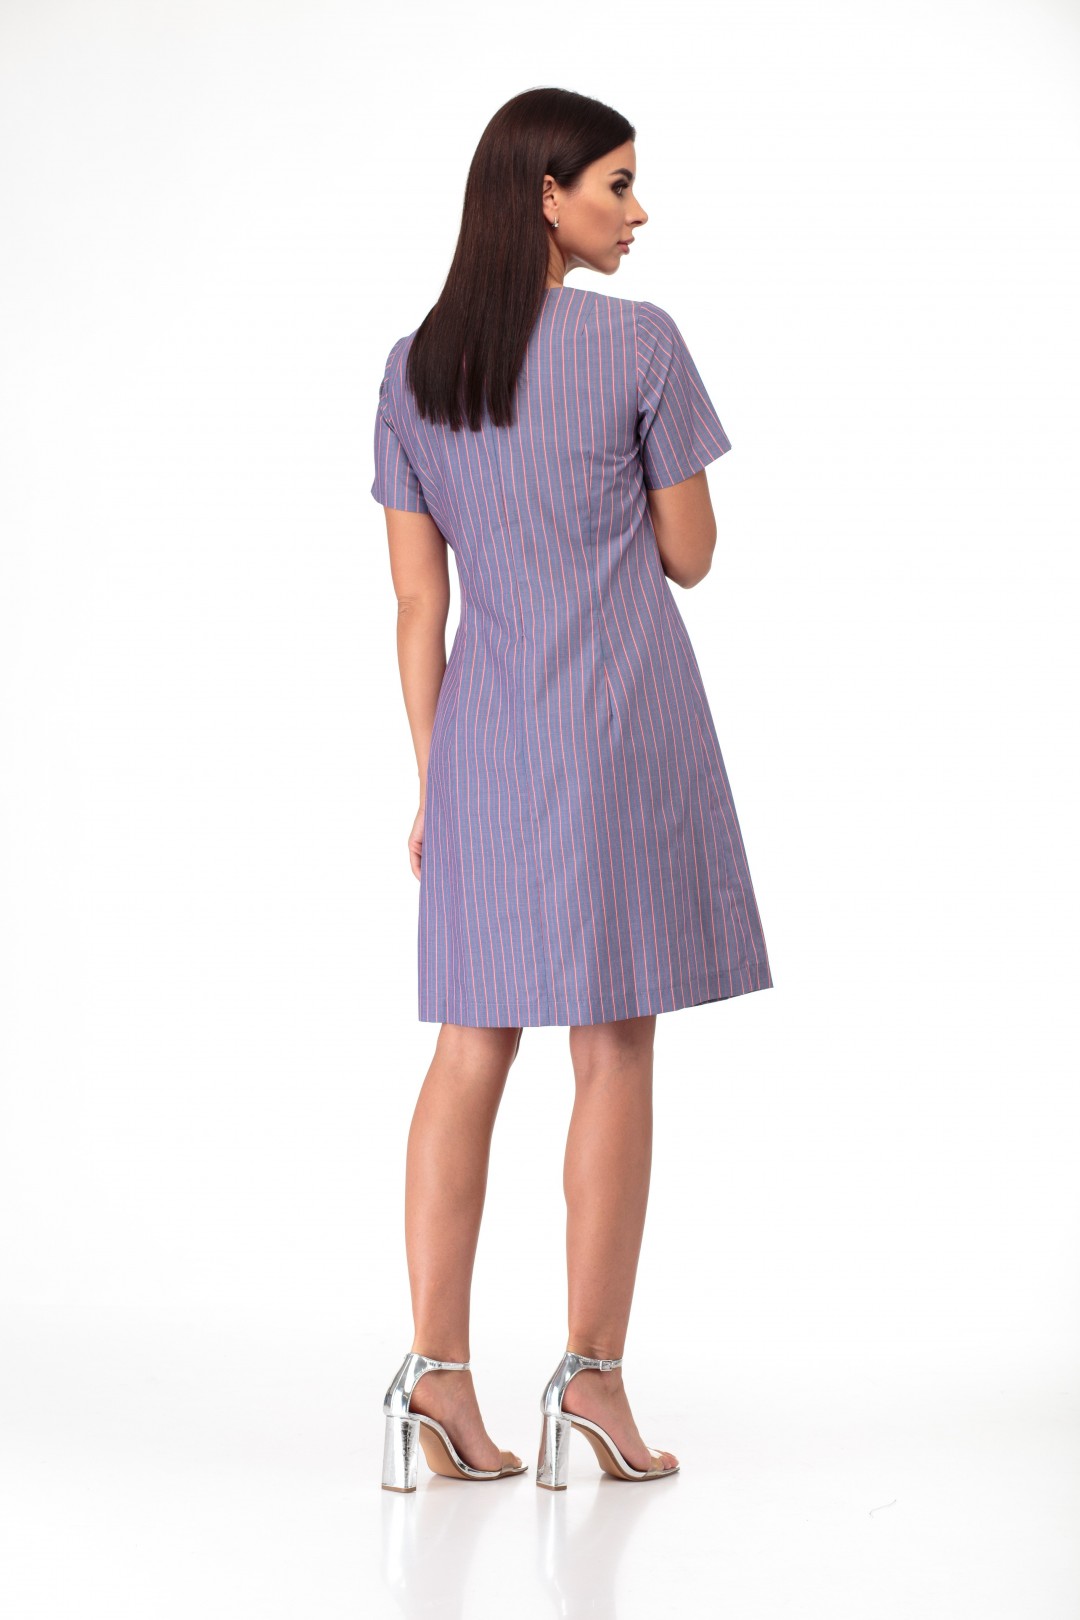 Платье Anelli 853 фиолетовые тона с полоской